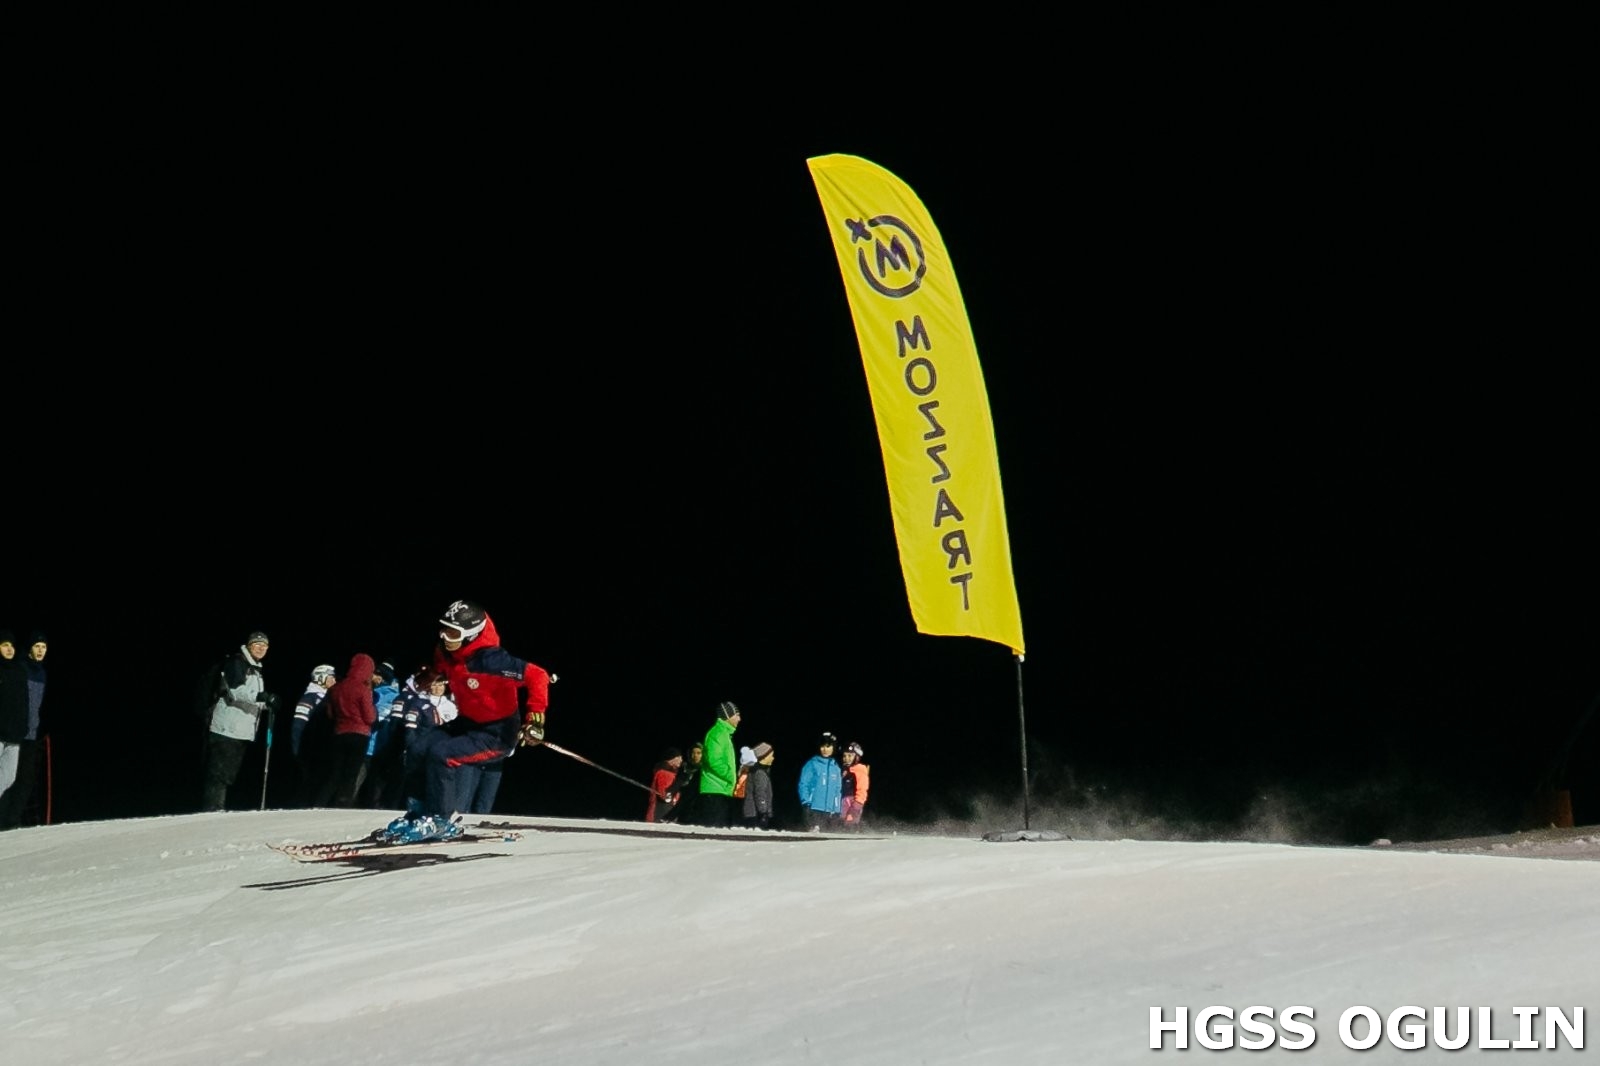 Trenutno pregledavate Dva naša člana u ekipi HGSS-a na GSS ski utrci na Kopaoniku